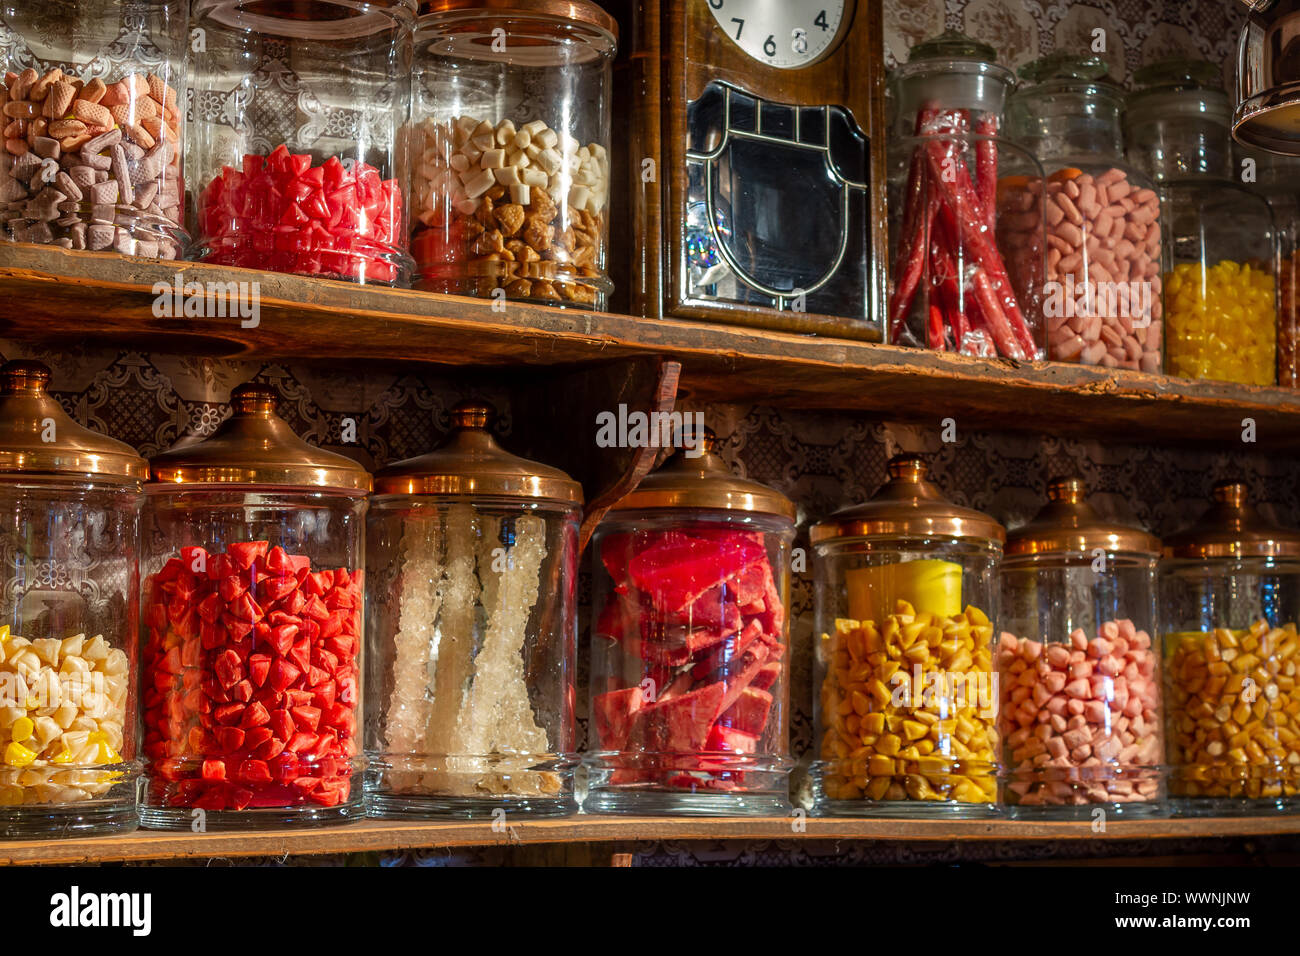 Antigua tienda de caramelos. Caramelos de colores en frascos. Antiguo estilo retro Foto de stock